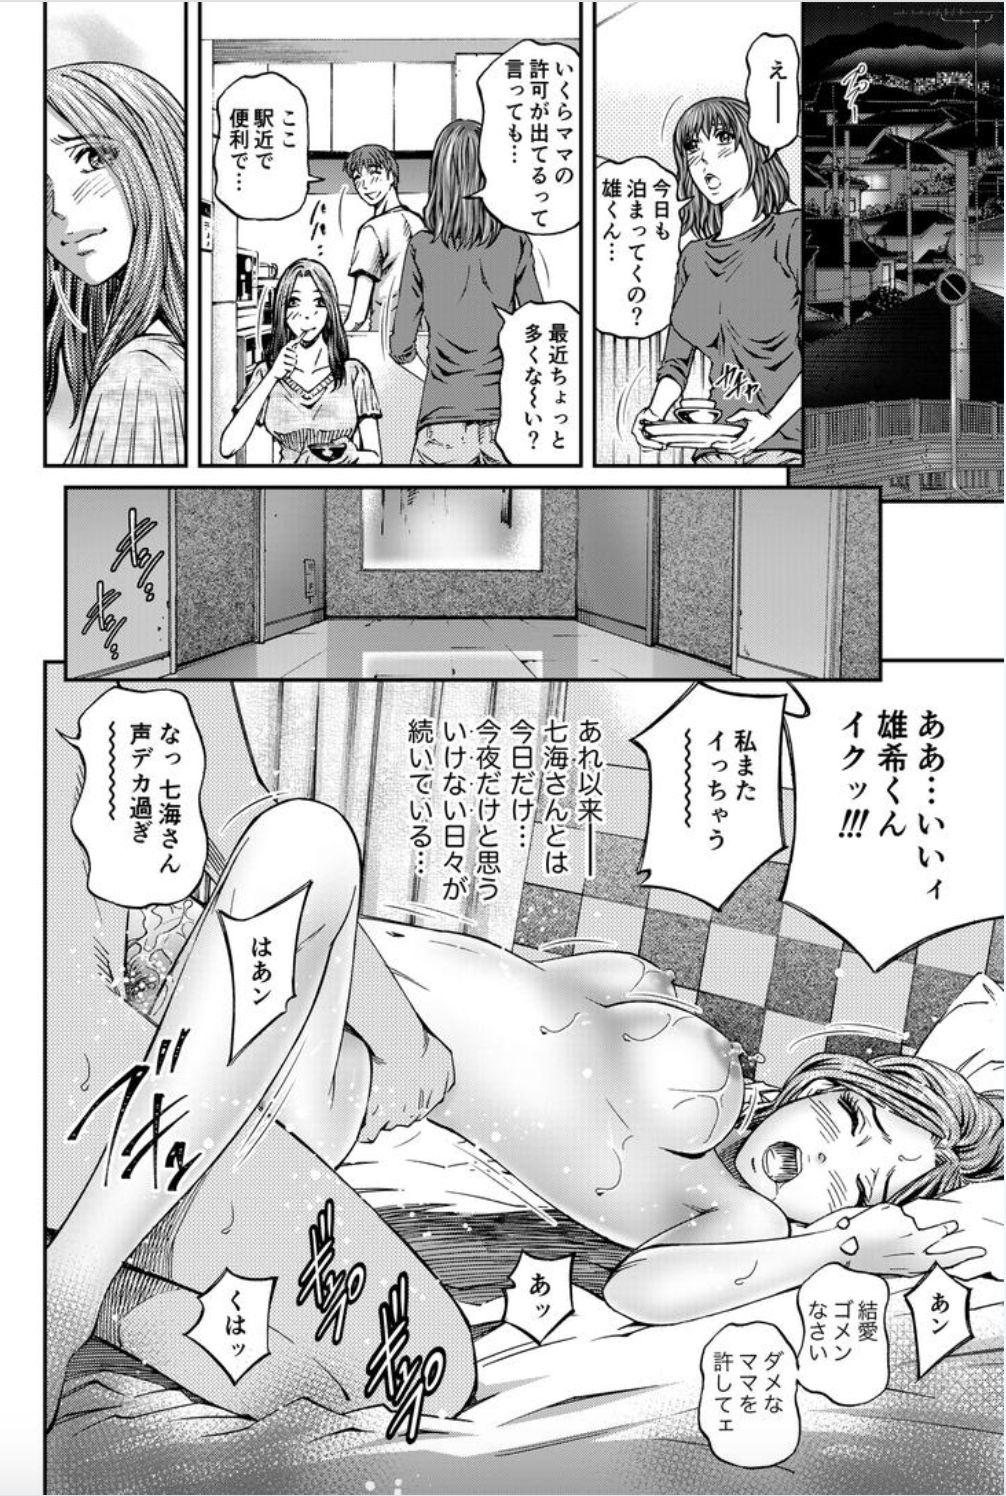 Masturbation Onna-tachi ga Iku Toki... Ero Drama Vol. 8 Datte, Kanojo no Haha ga... Doctor Sex - Page 20